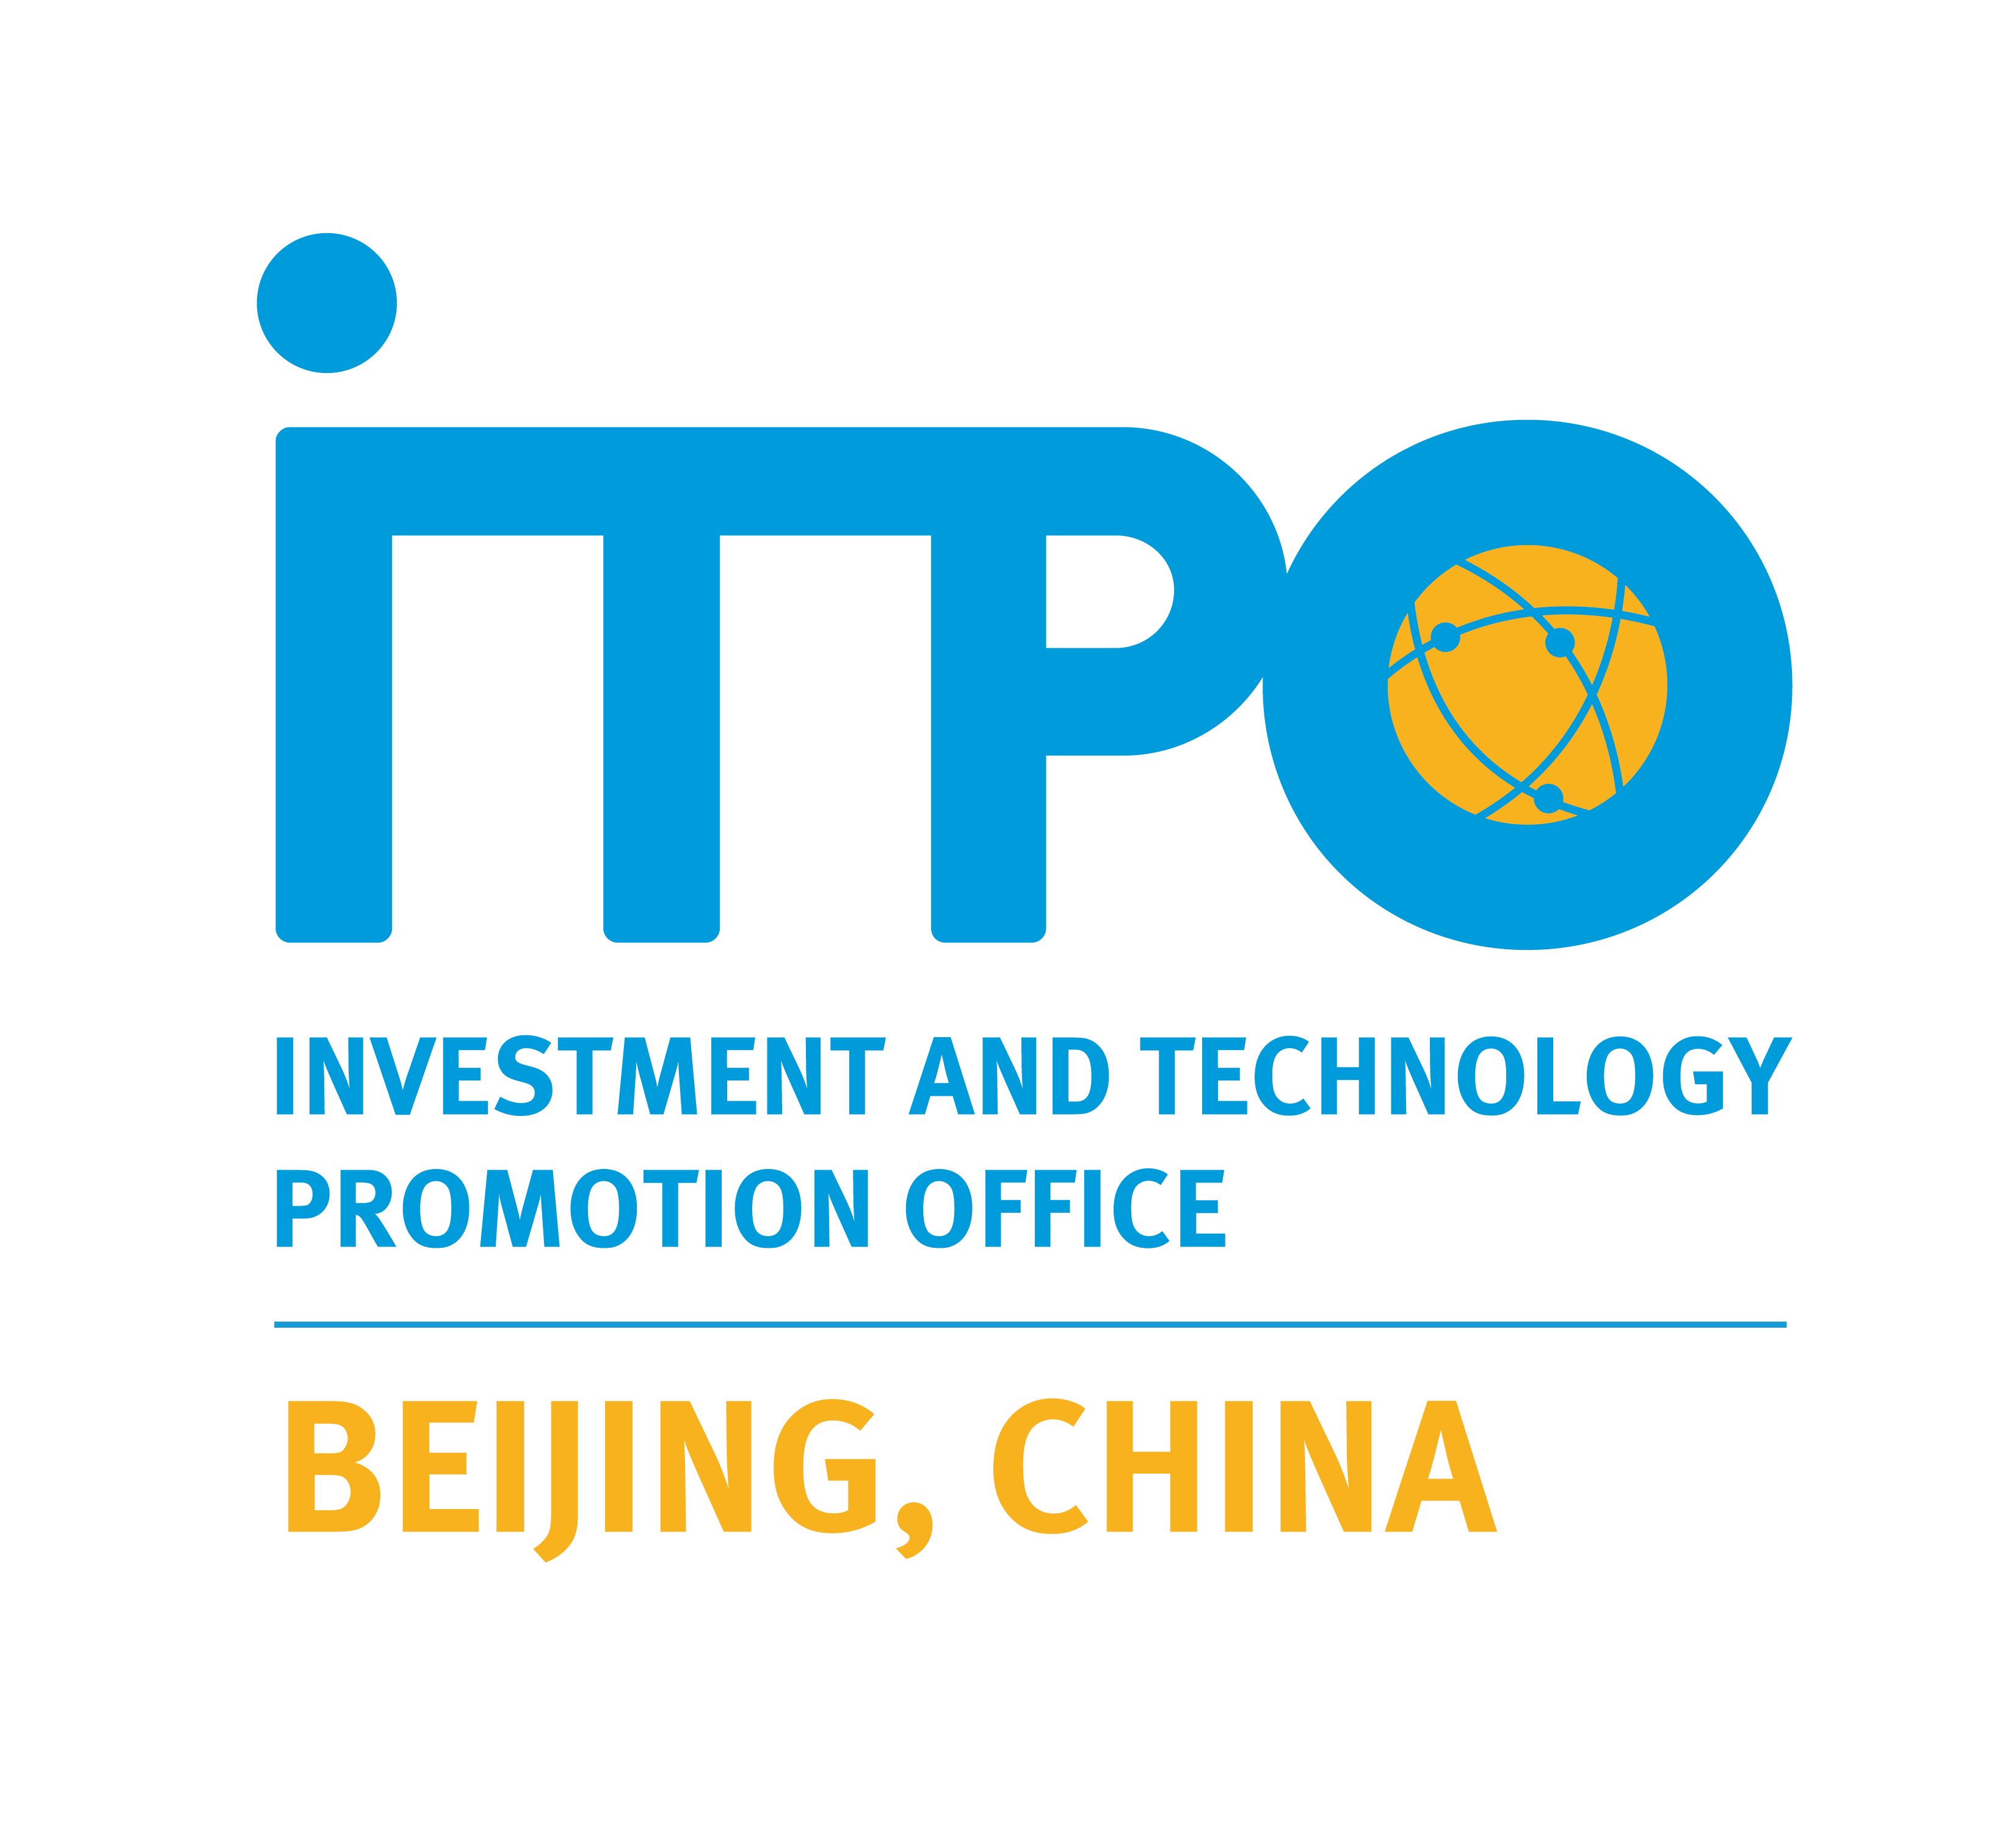 ITPO_China_Beijing